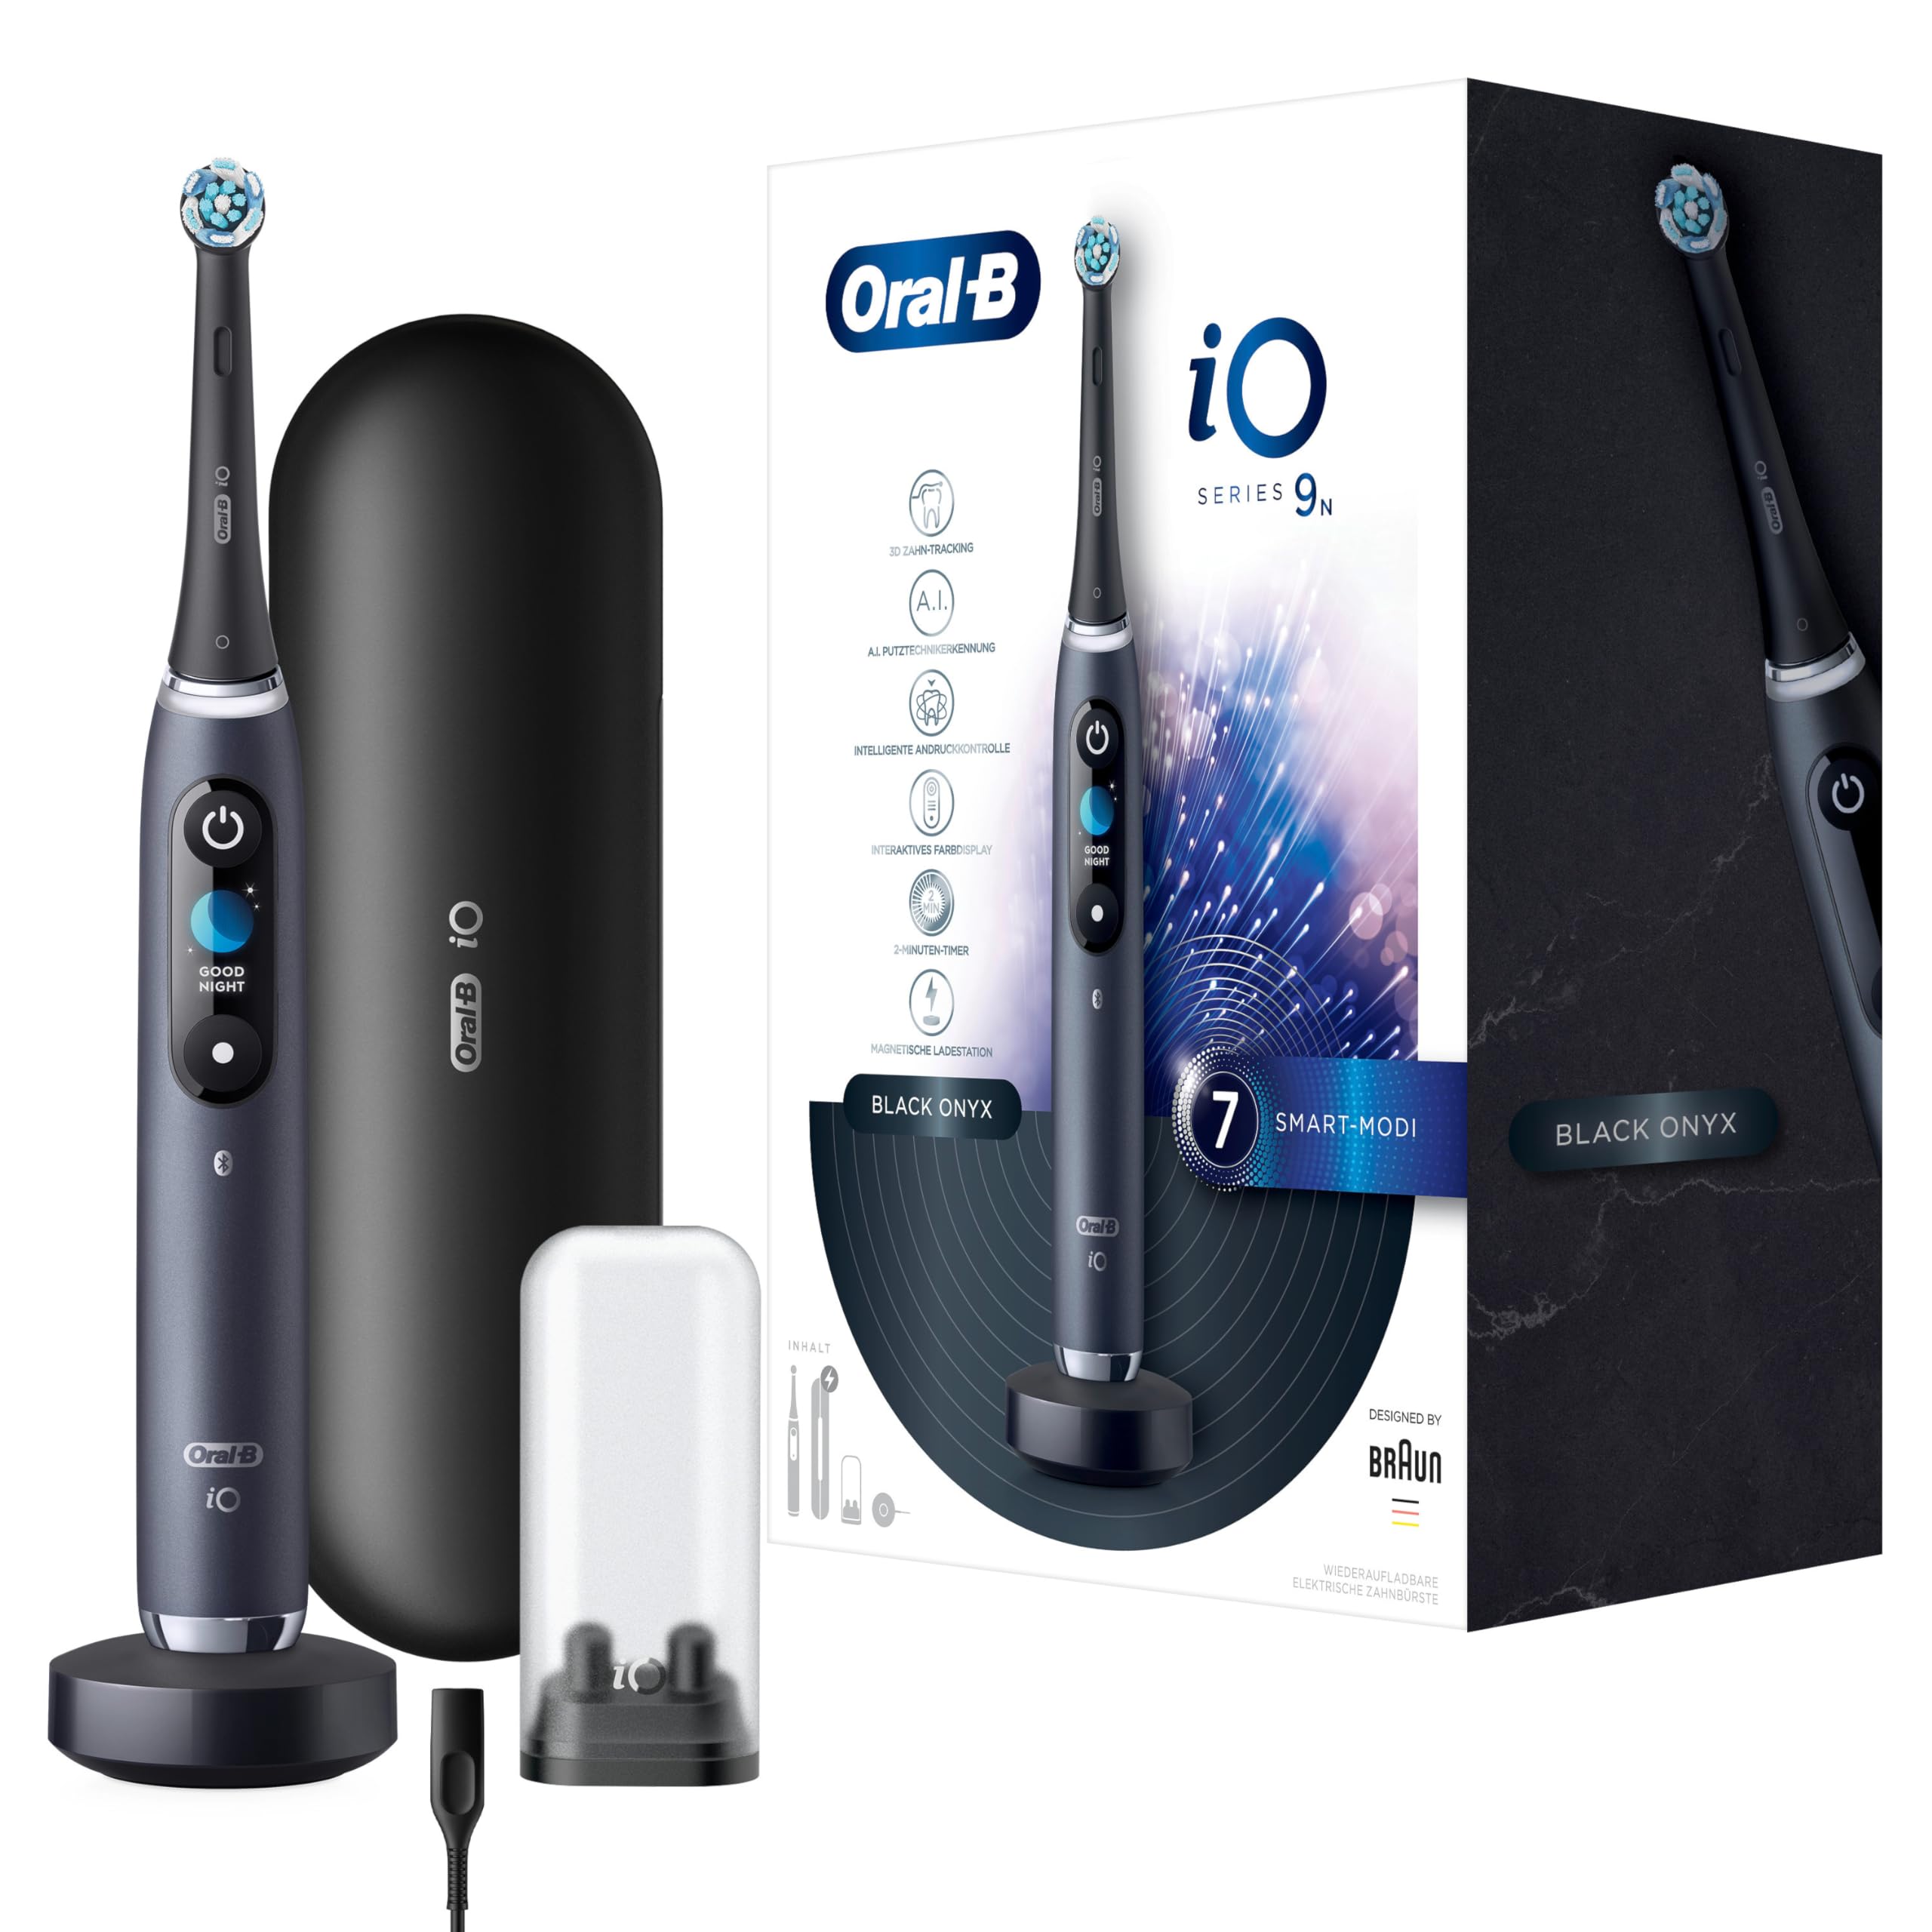 Oral-B iO Series 9 Elektrische Zahnbürste/Electric Toothbrush, 7 Putzmodi für Zahnpflege, Magnet-Technologie & 3D-Zahnflächenanalyse, Farbdisplay & Lade-Reiseetui, Geschenk Mann/Frau, black onyx